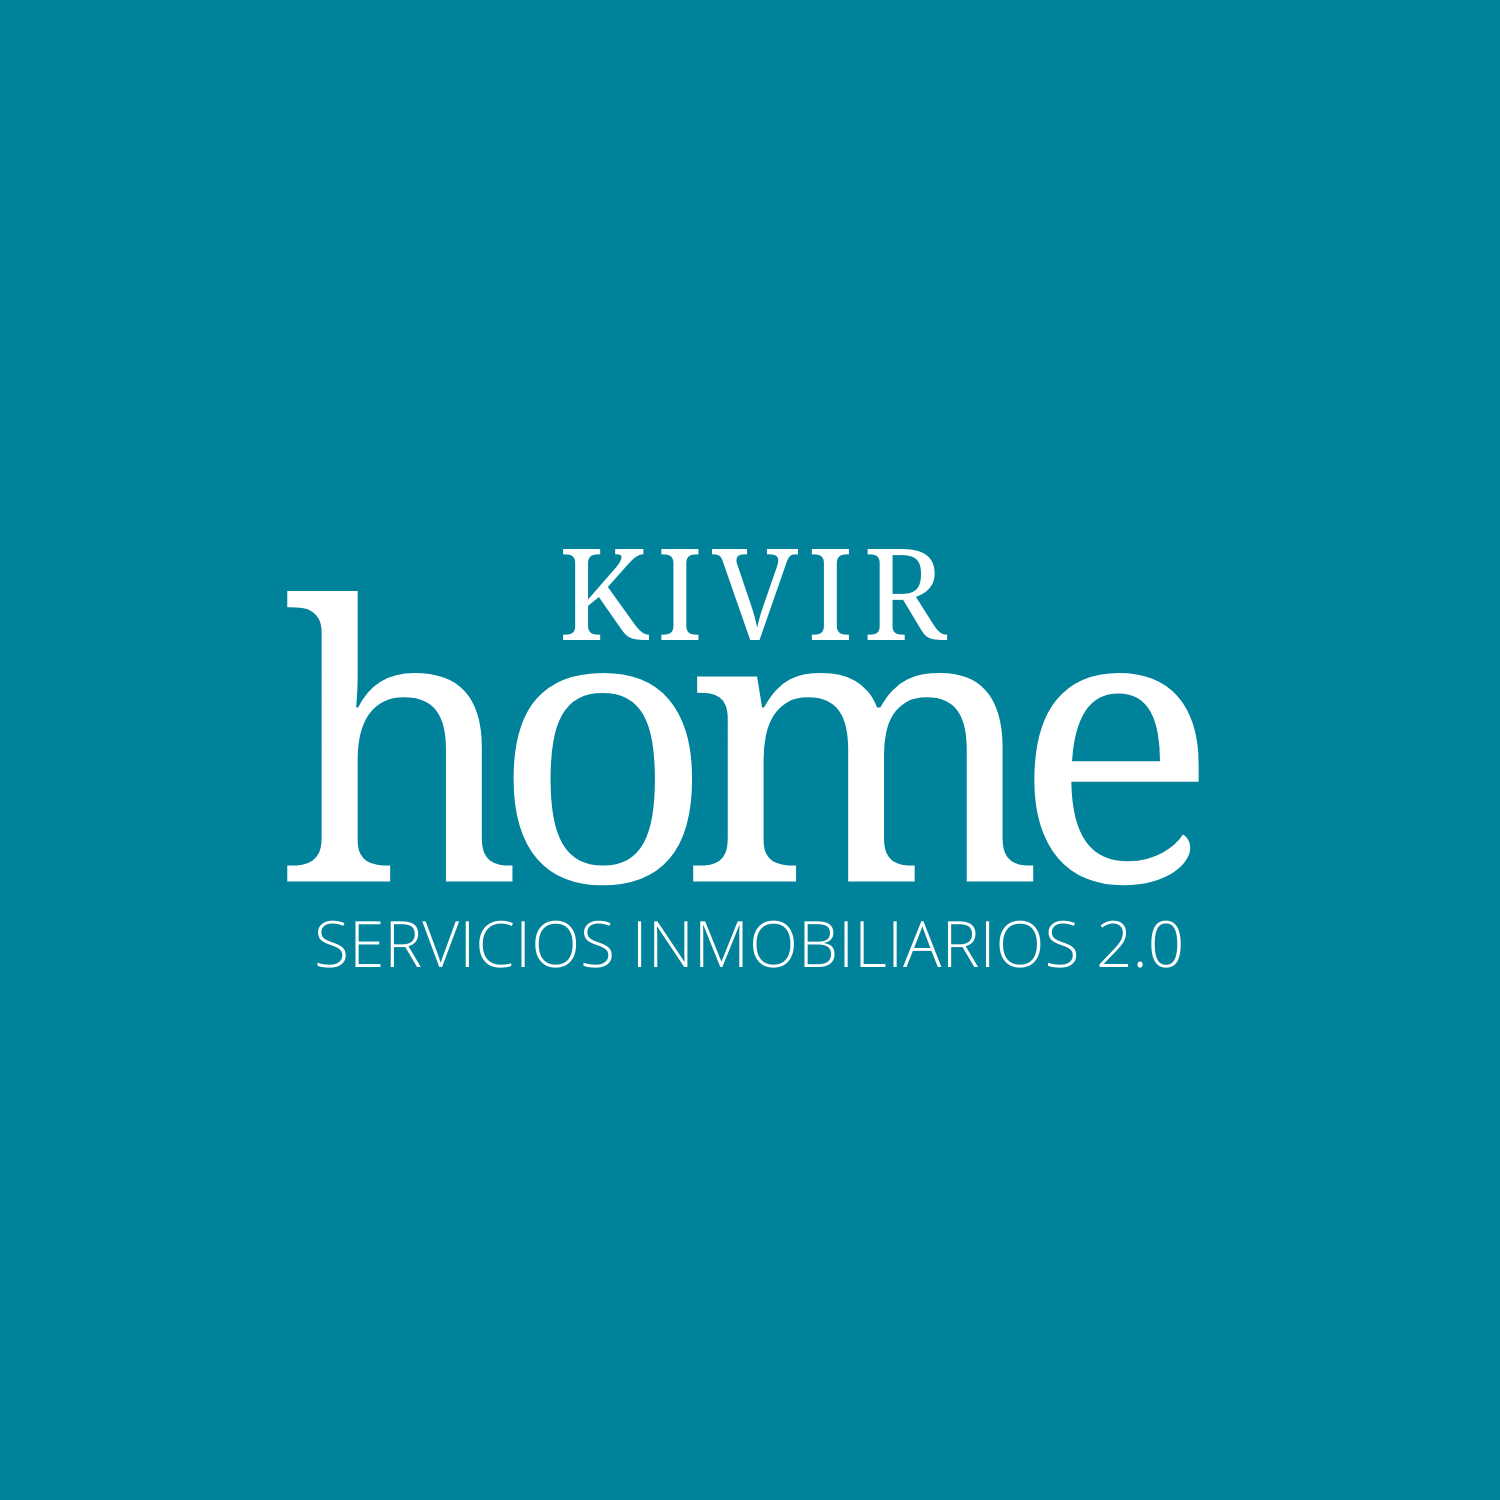 Kivir Home